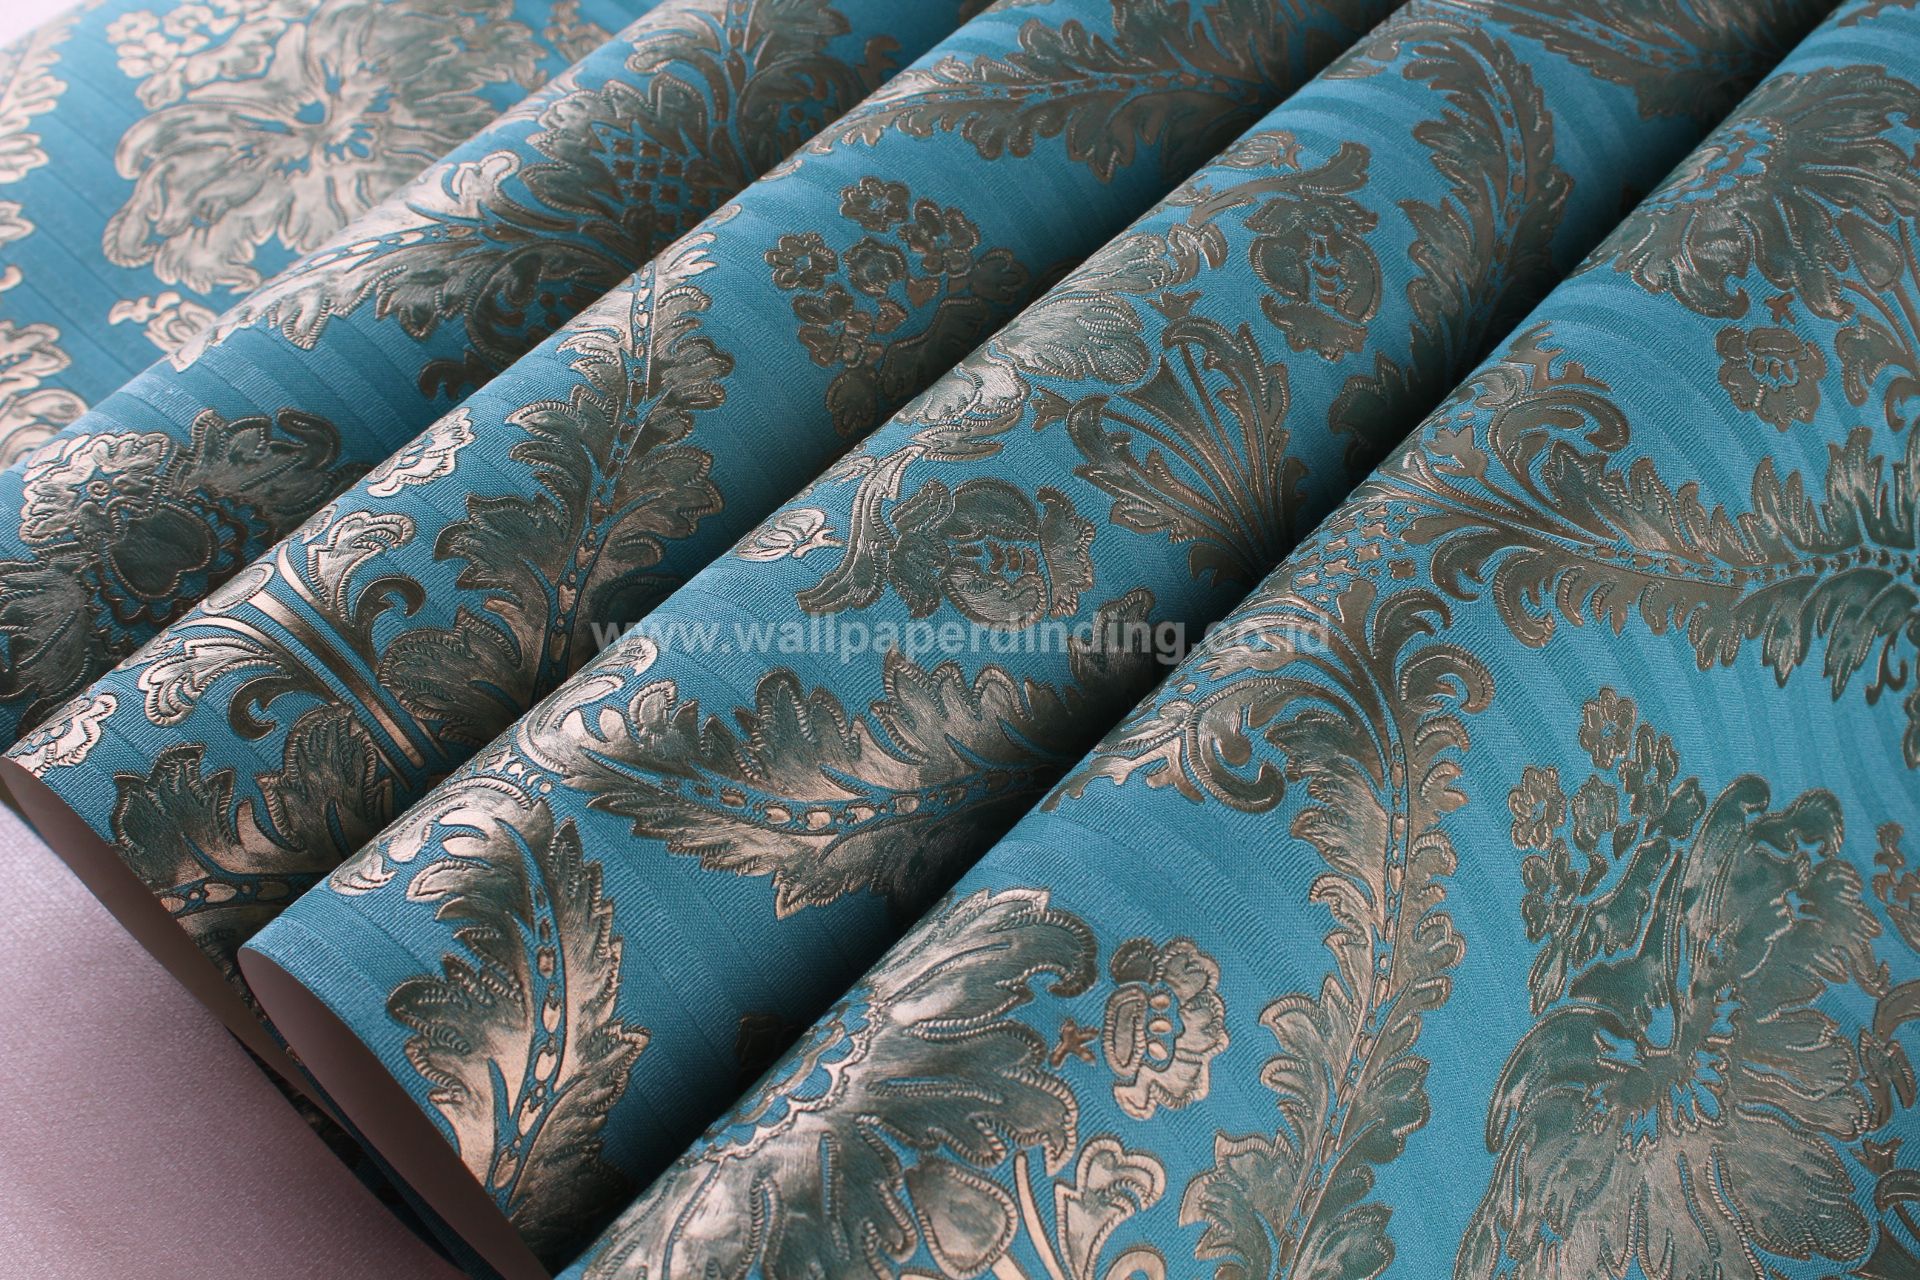 Wallpaper Dinding Batik Hijau Emas Dv1195 - Dinding Warna Biru Keren - HD Wallpaper 